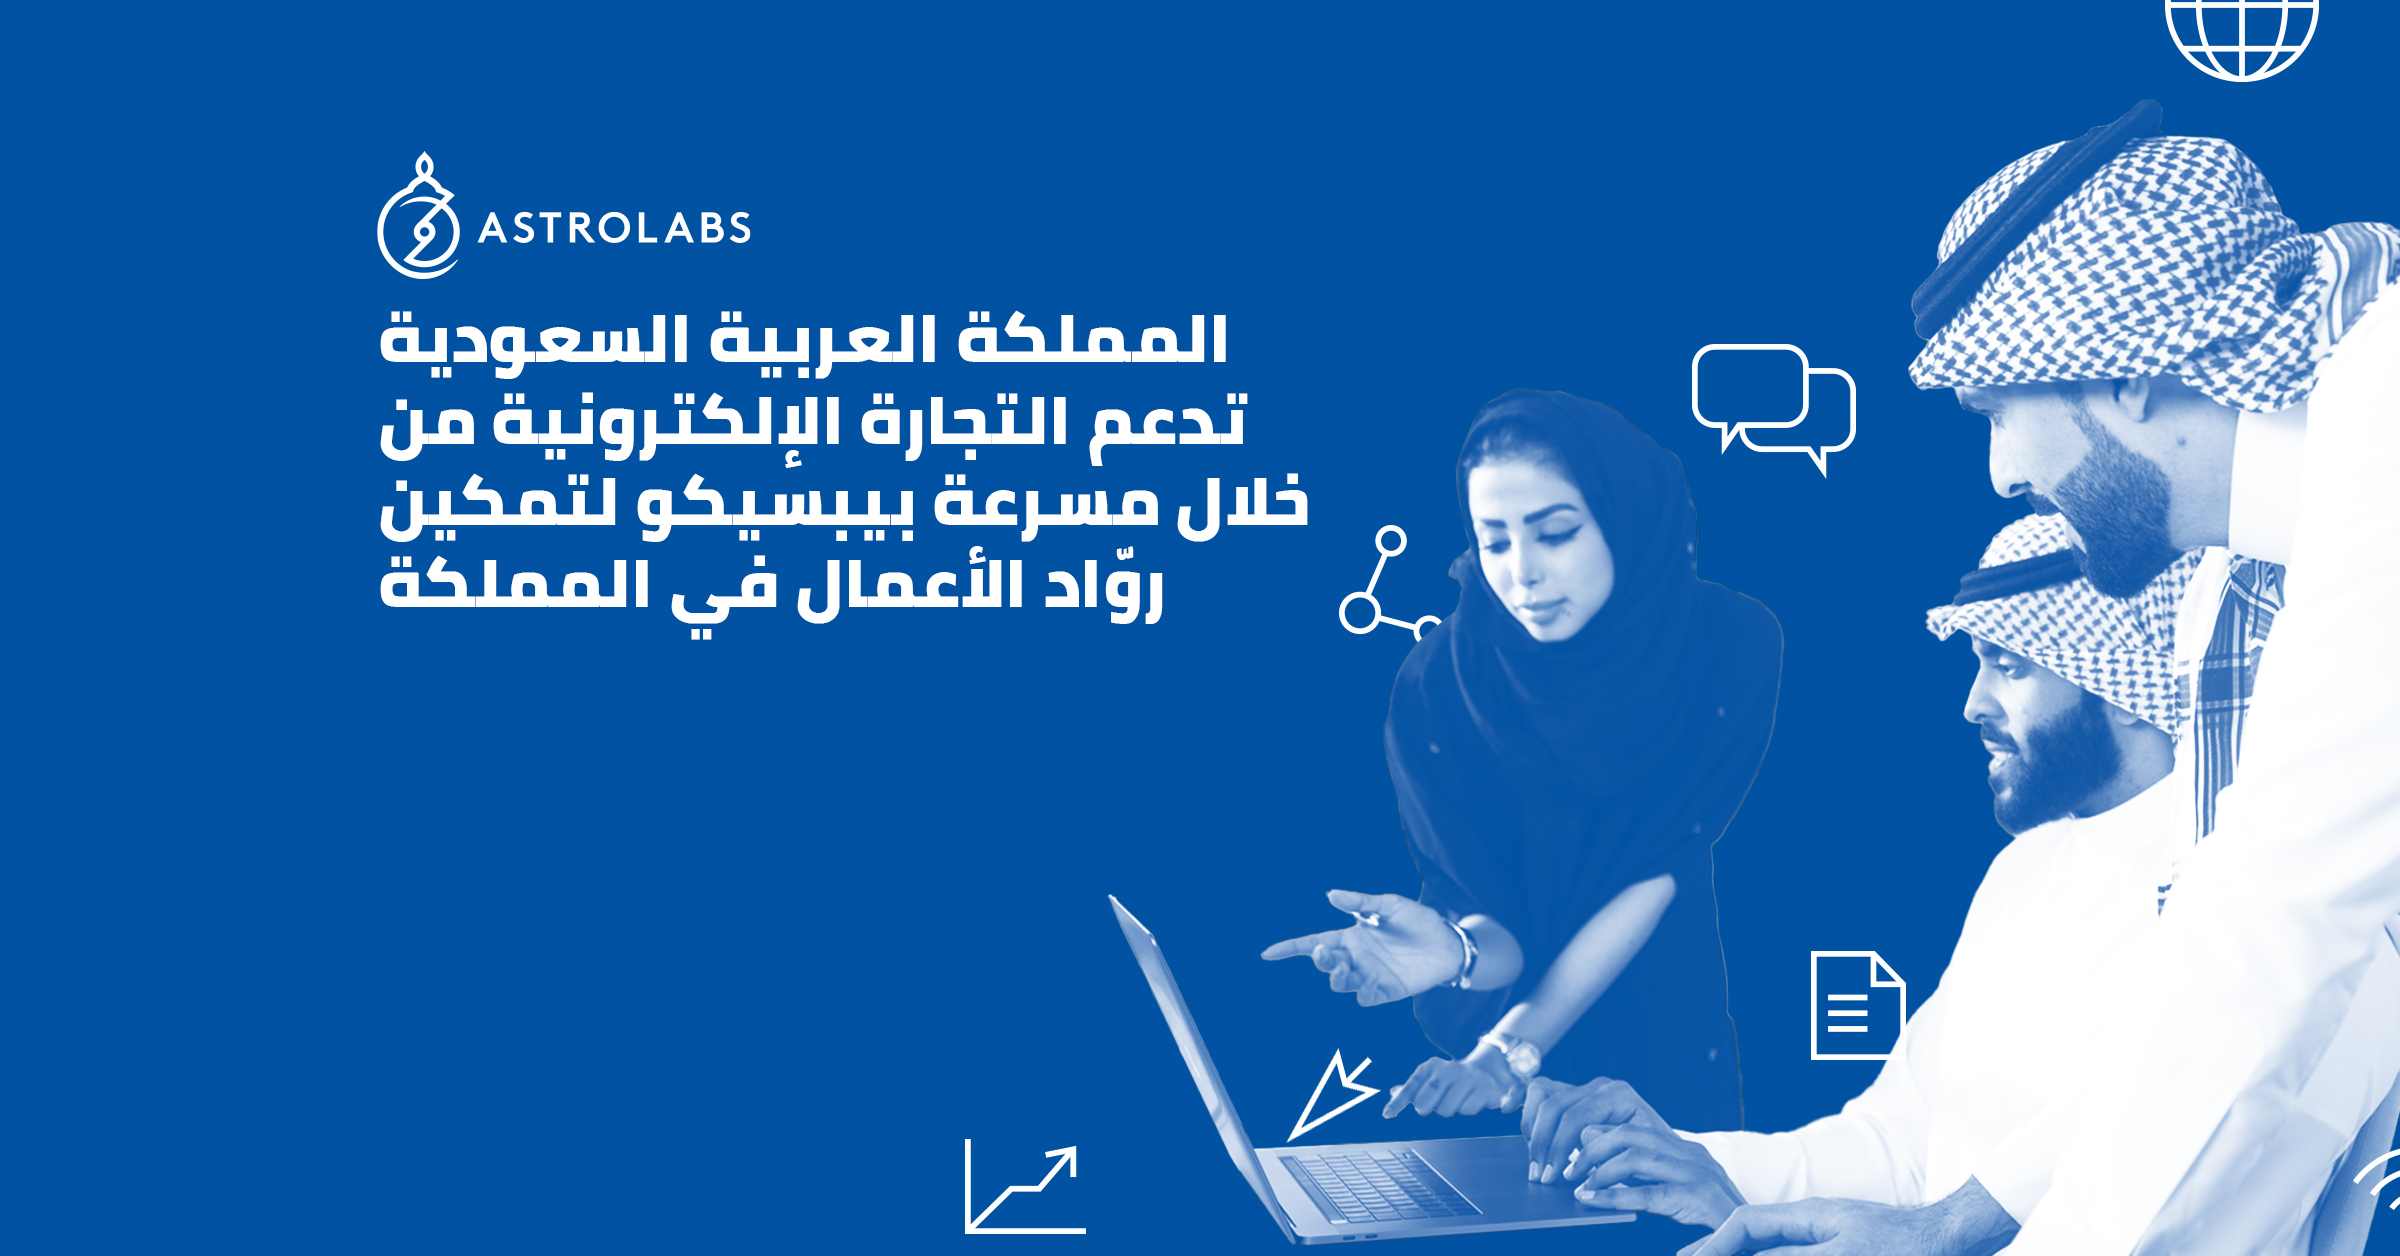 المملكة العربية السعودية تدعم التجارة الإلكترونية من خلال مسرعة بيبسيكو لتمكين روّاد الأعمال في المملكة